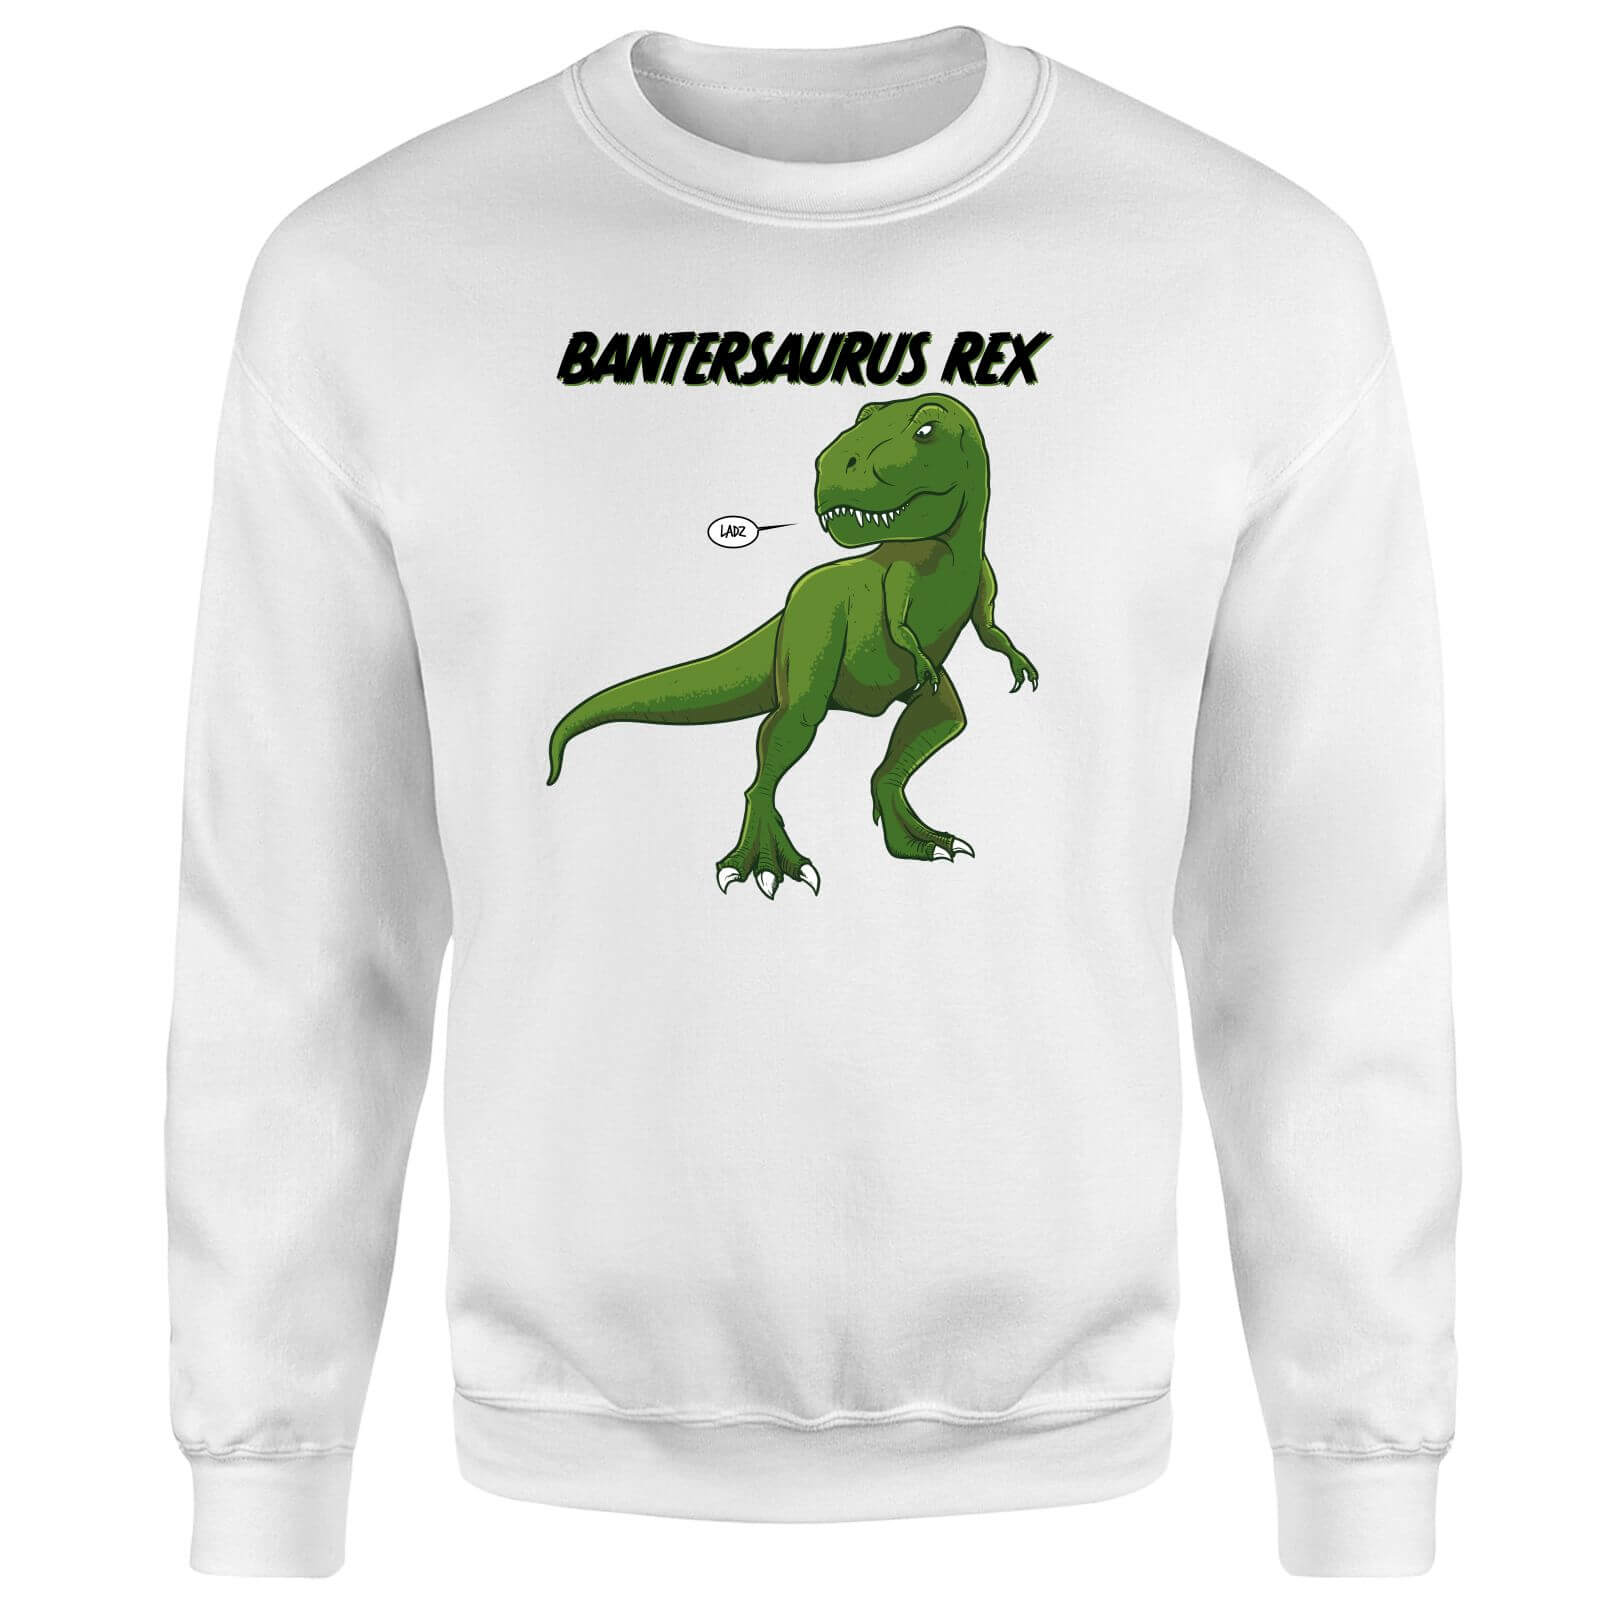 Bantersaurus Rex Sweatshirt - White - S - White